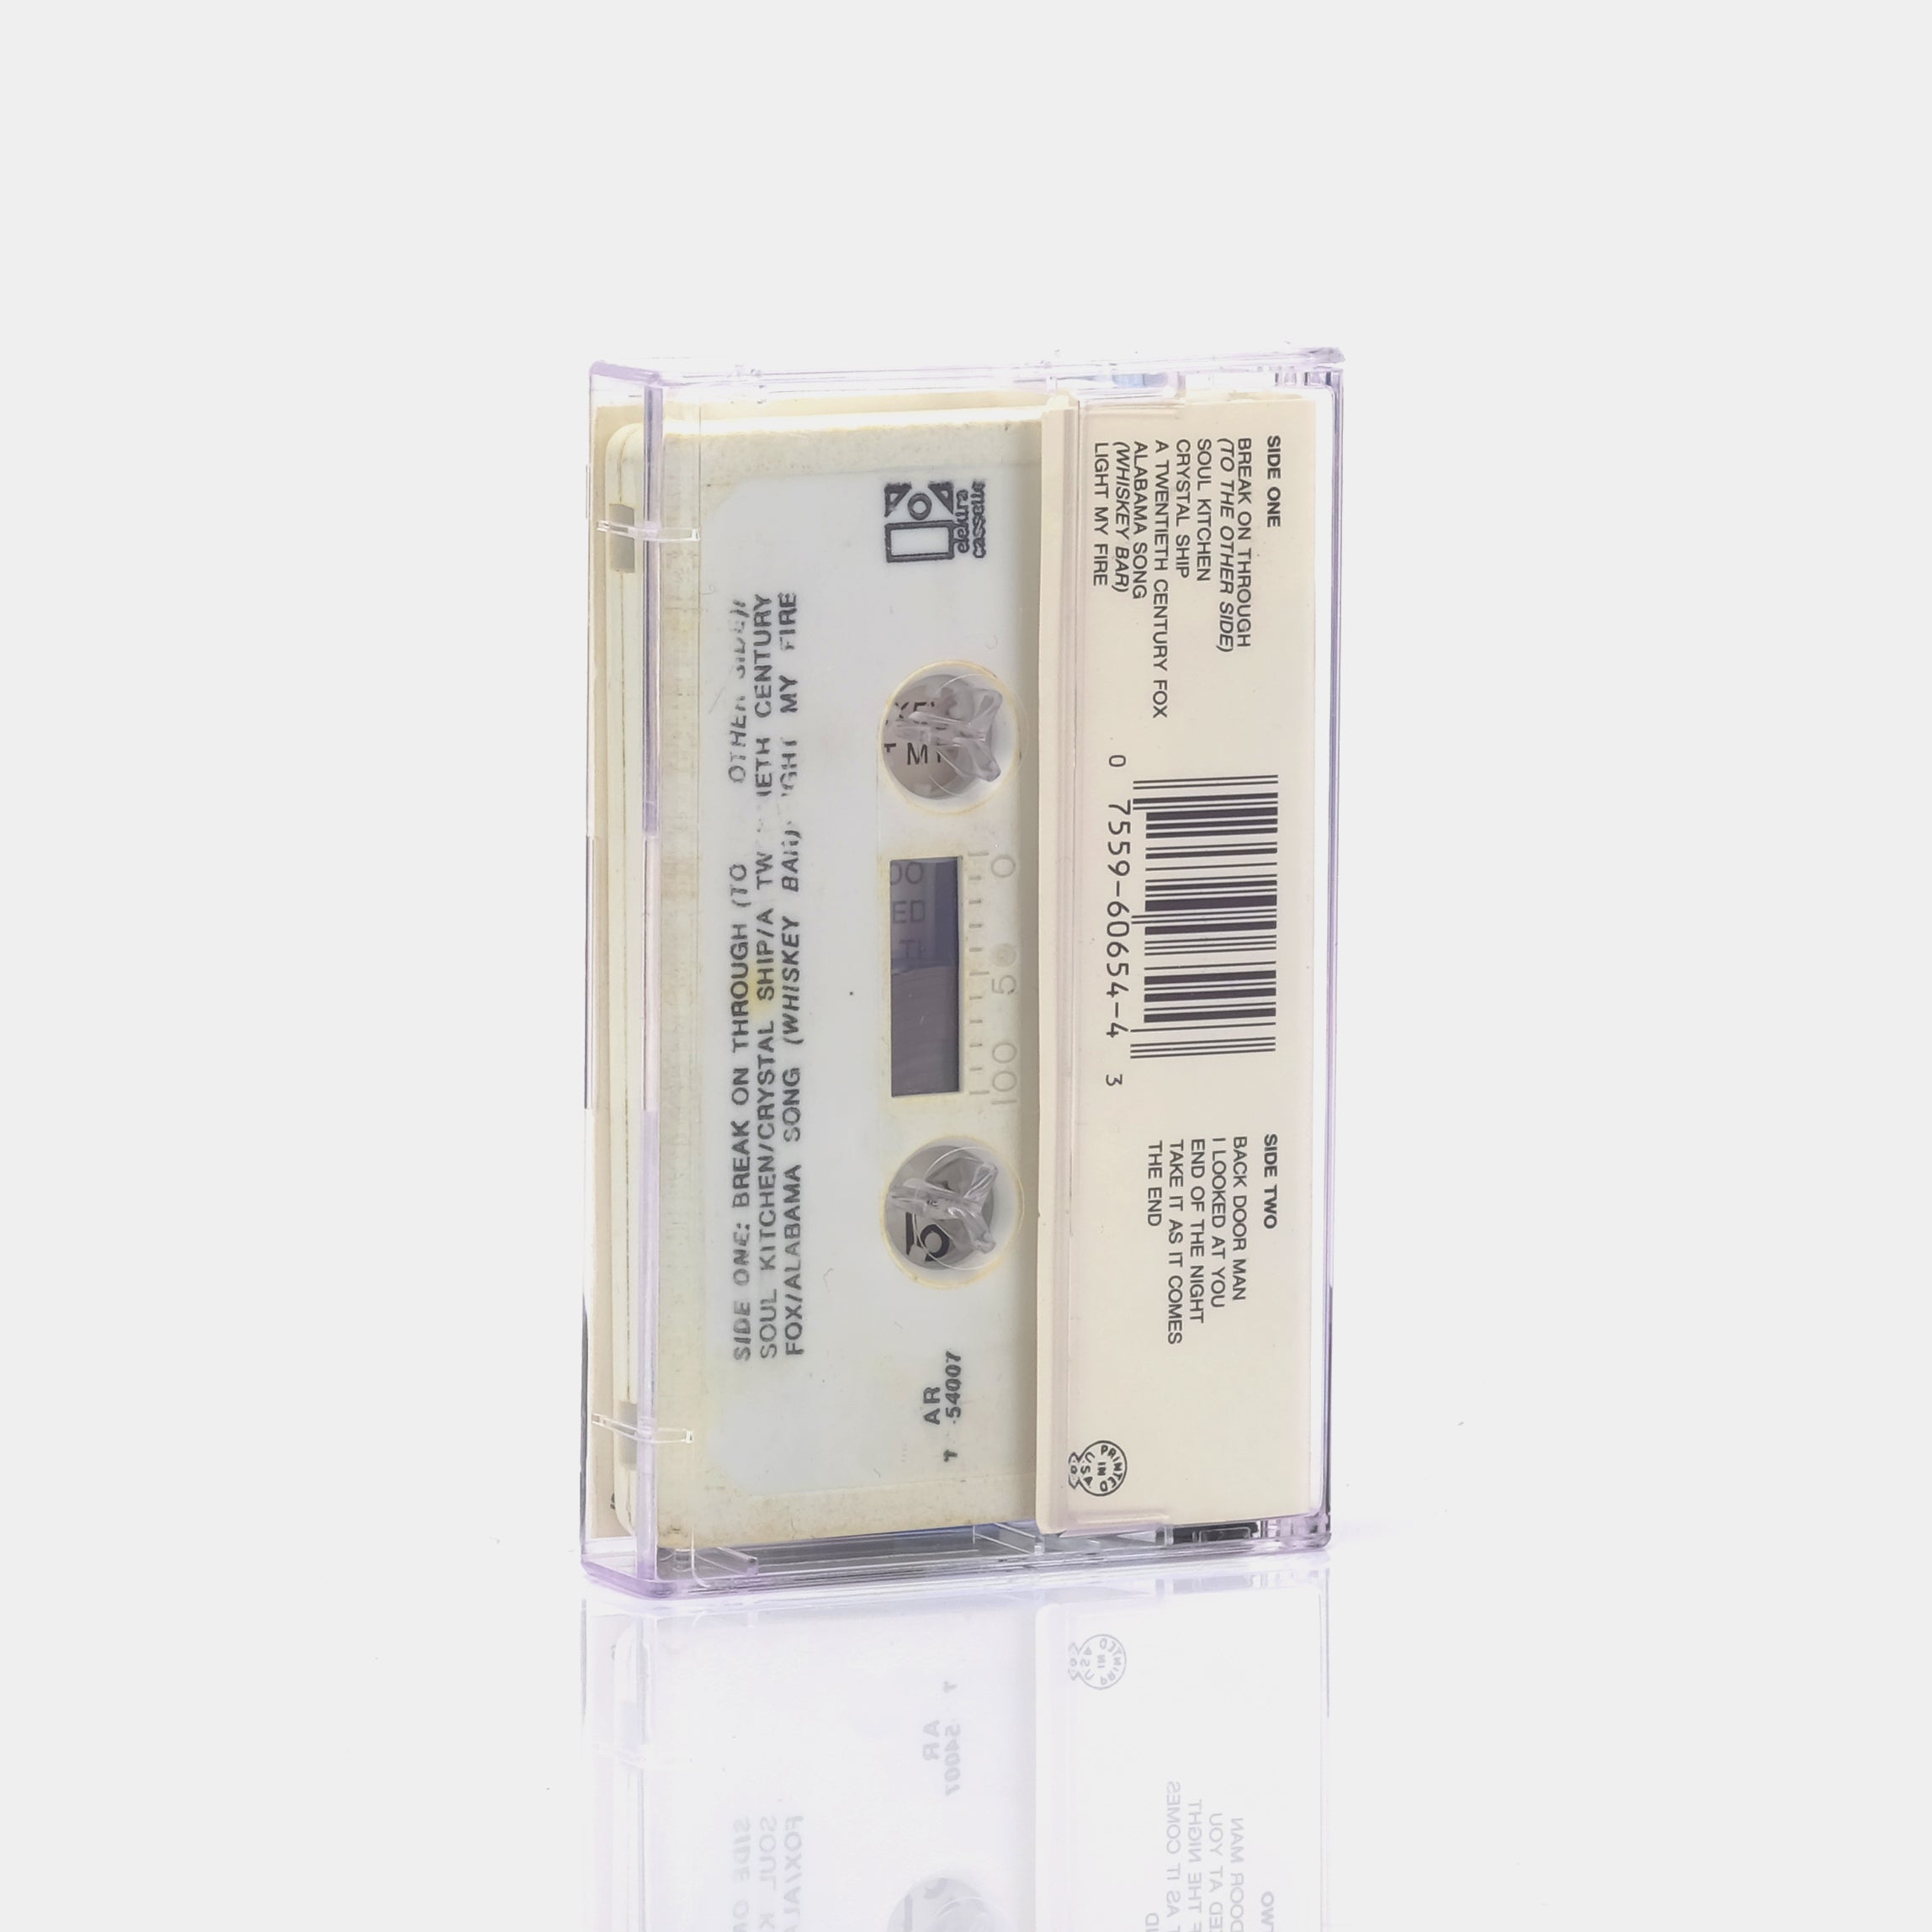 The Doors - The Doors Cassette Tape